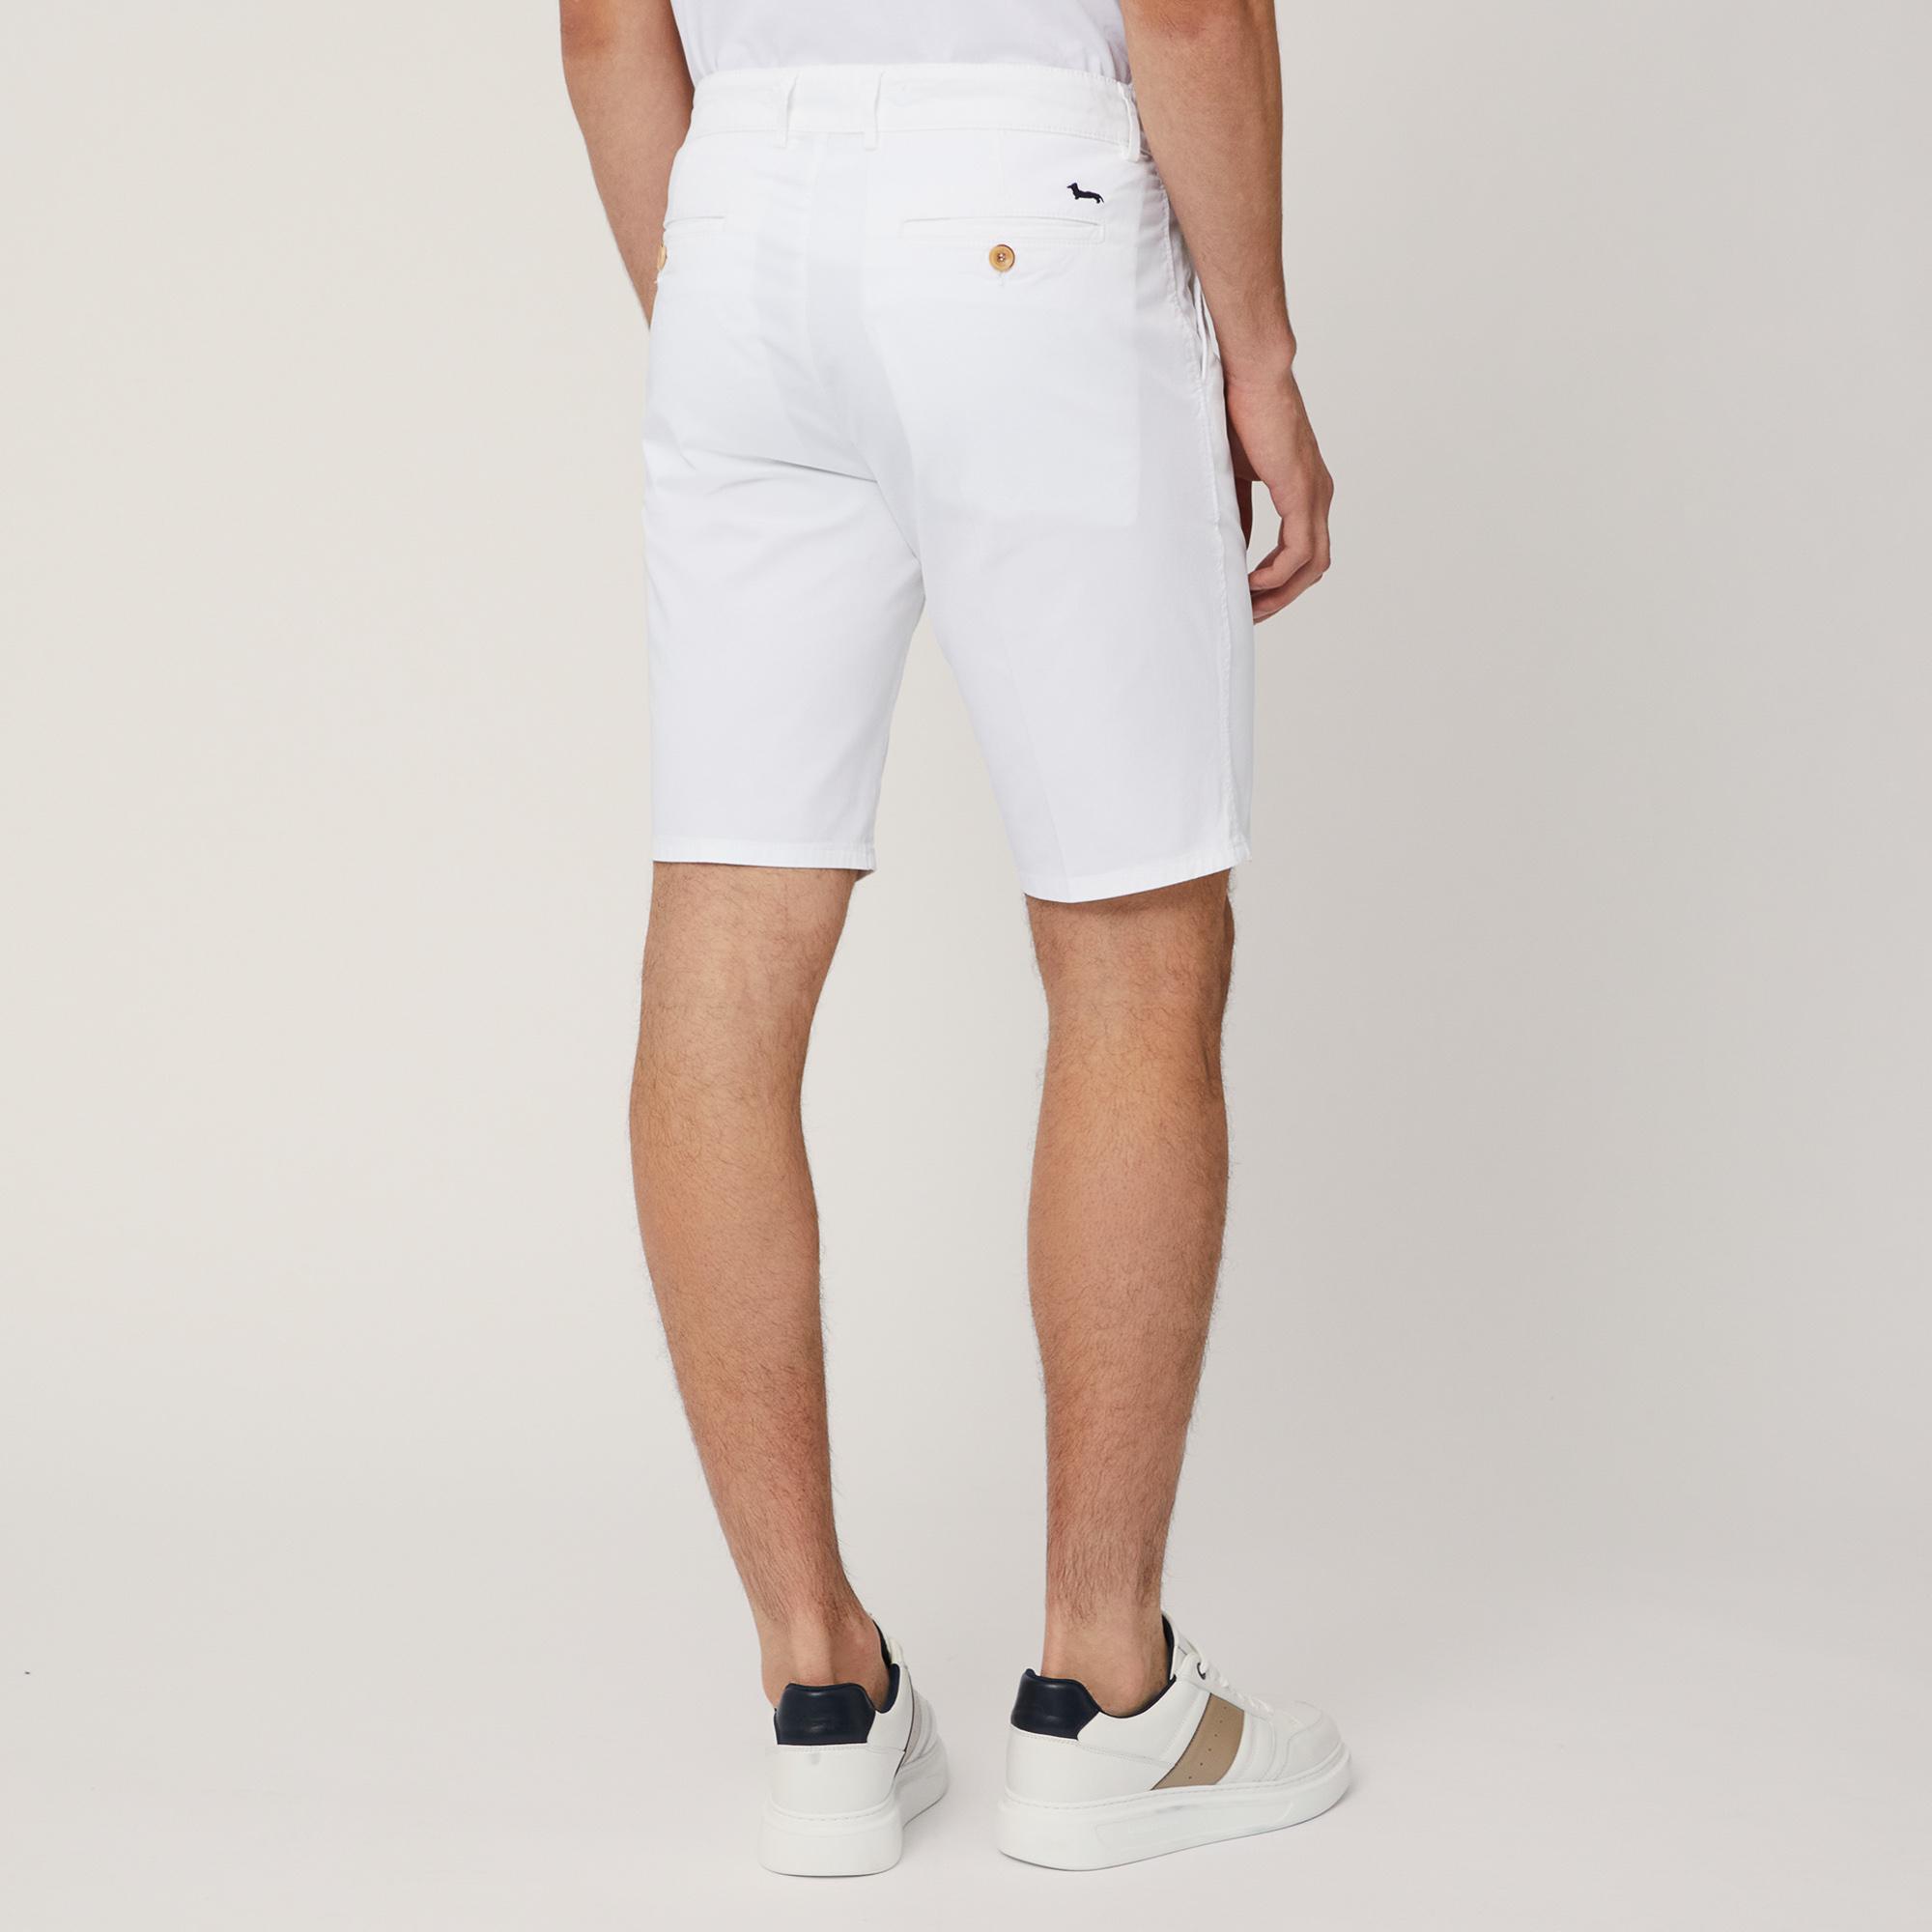 Regular Fit Bermuda Shorts, White, large image number 1